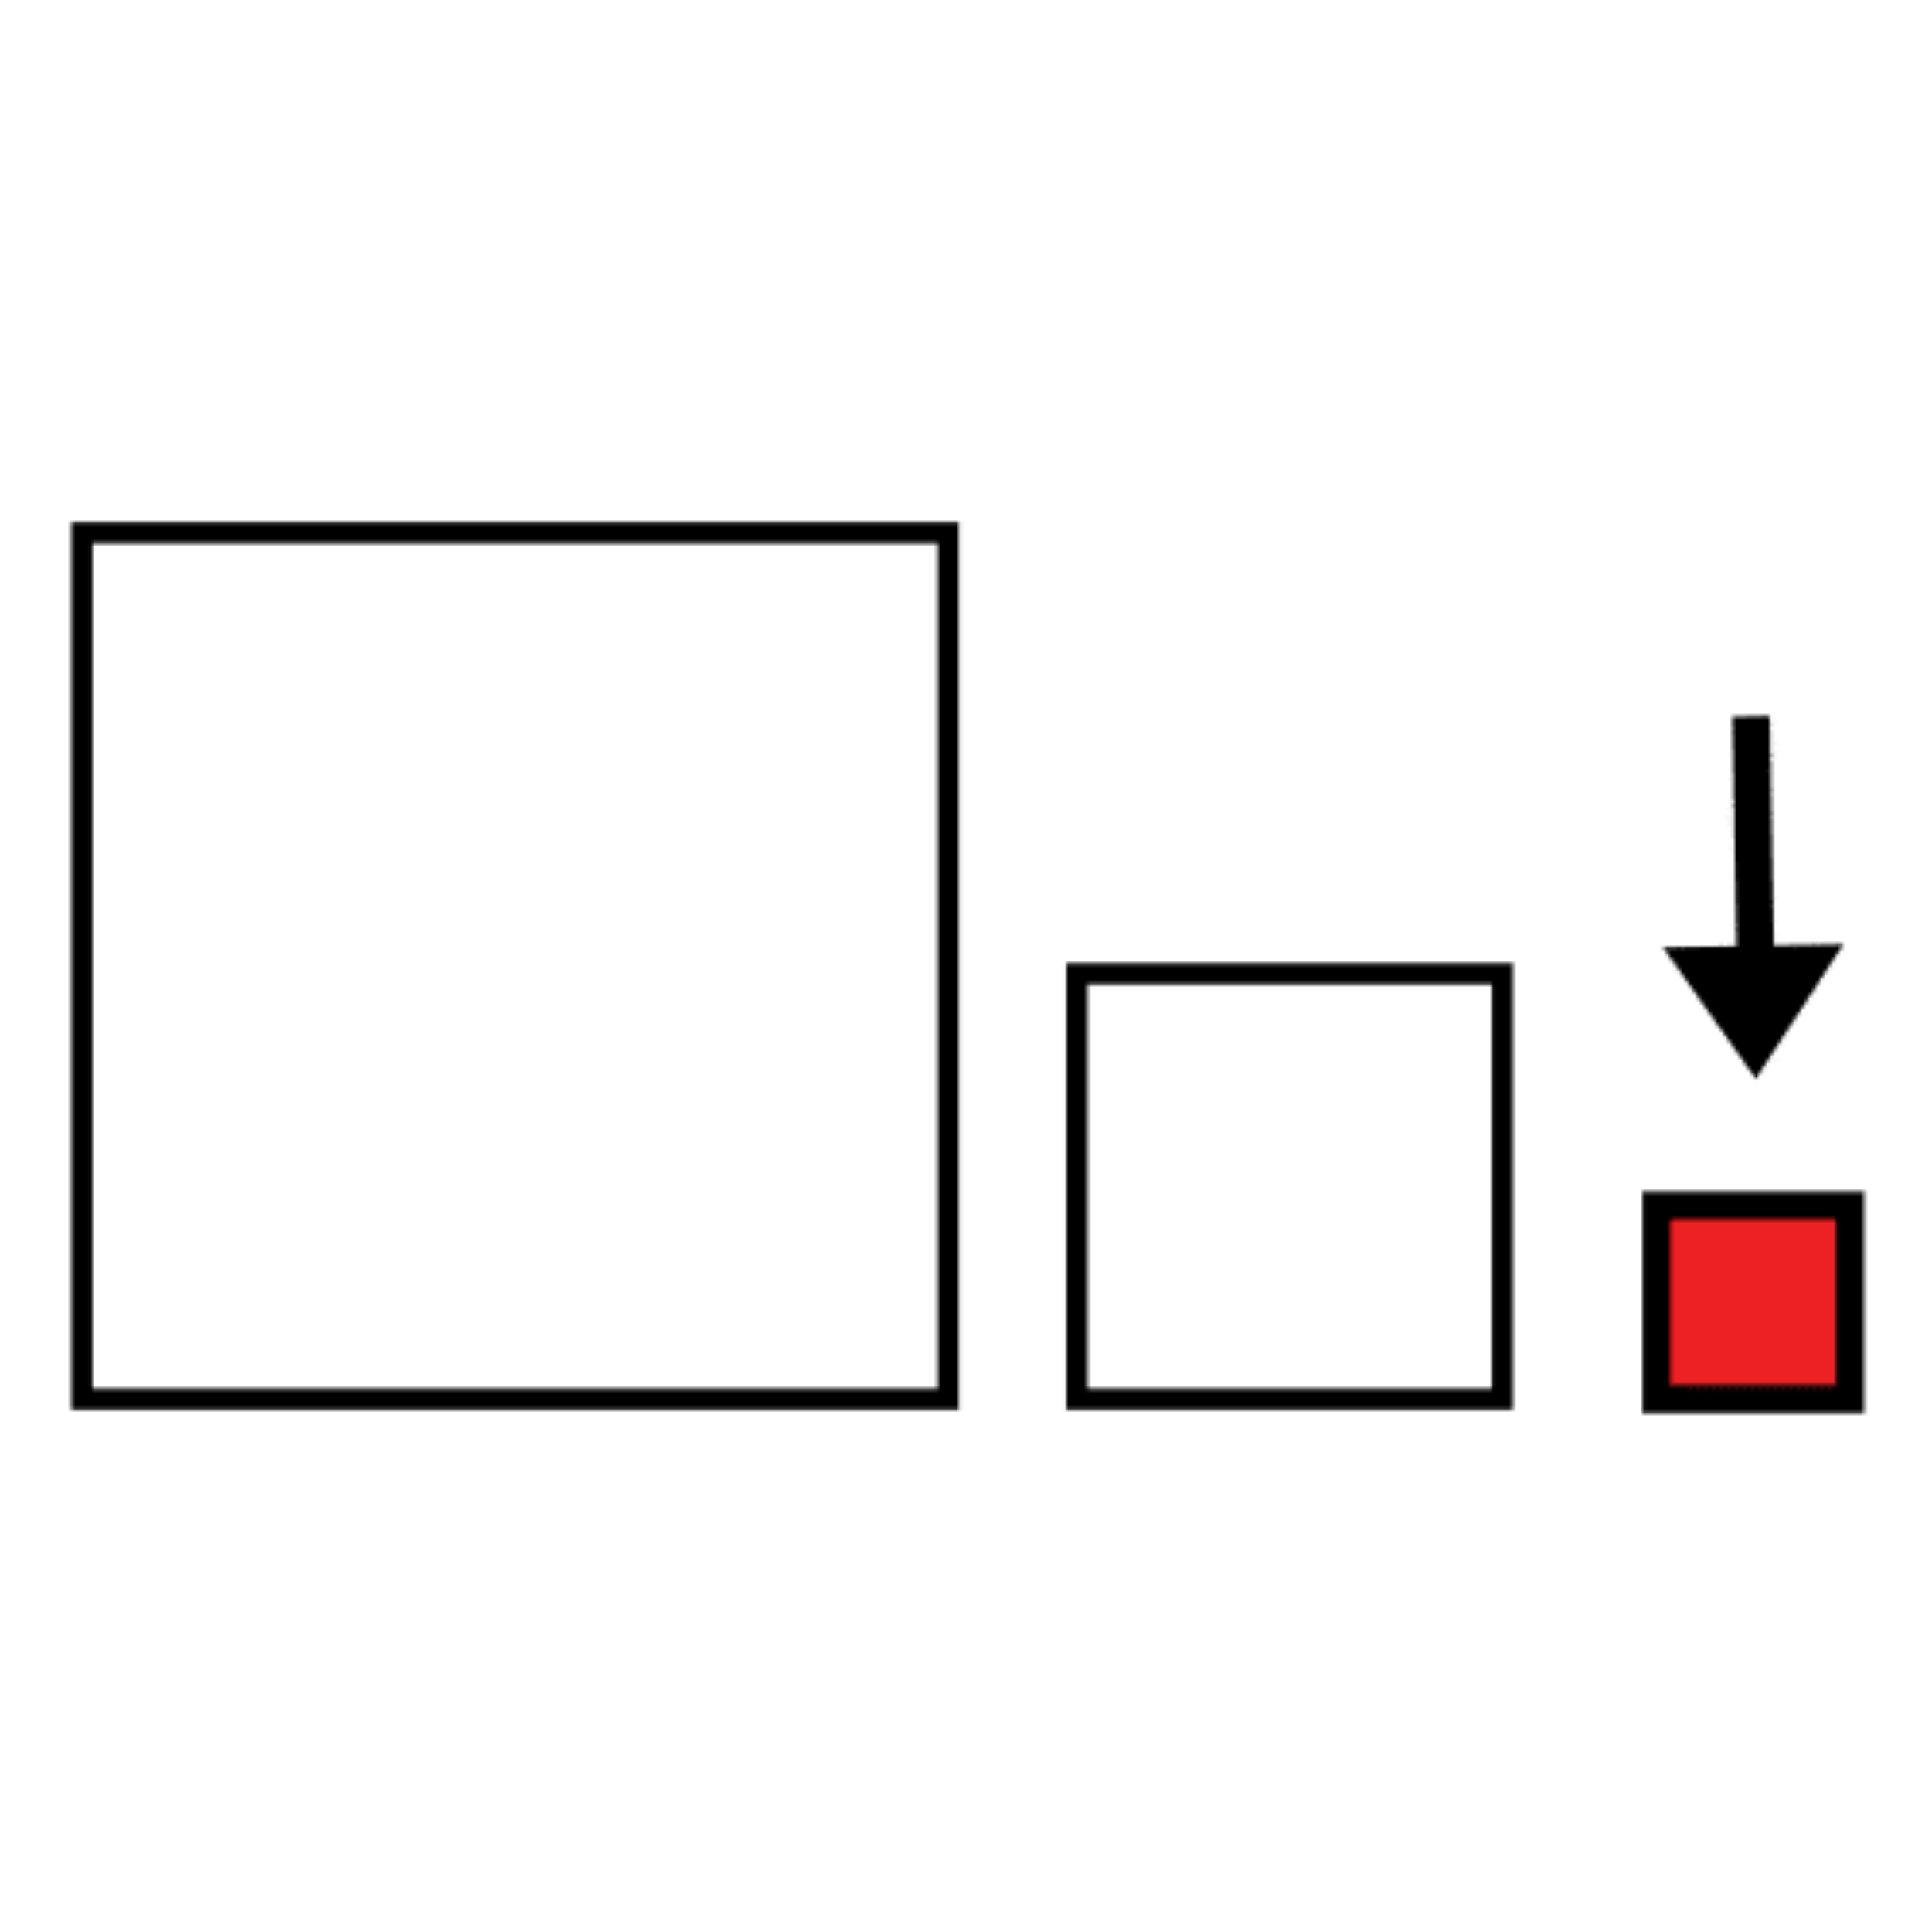 La imagen muestra tres cuadrados y una flecha señalando al más pequeño que está pintado de rojo.